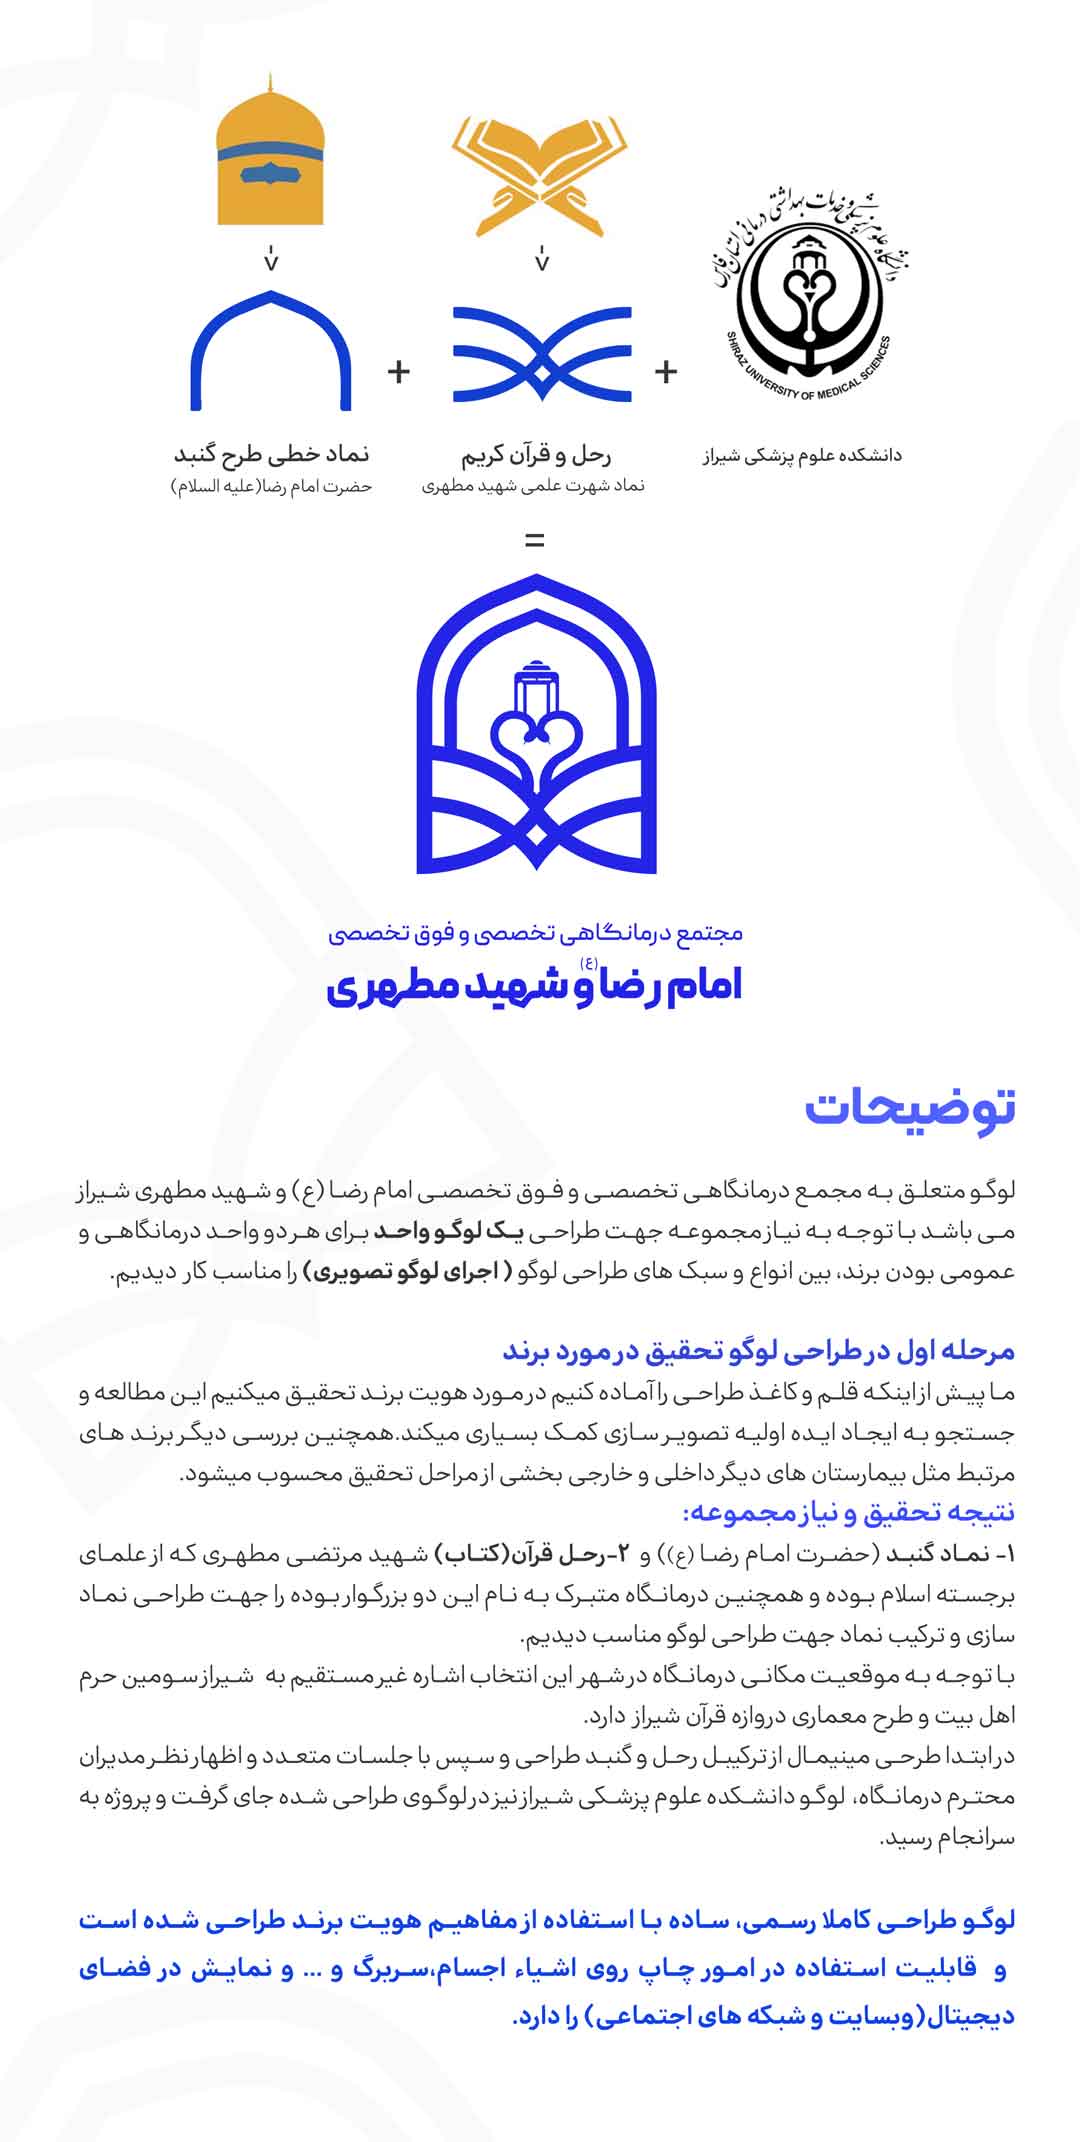 لوگو درمانگاه امام رضا و شهید مطهری شیراز